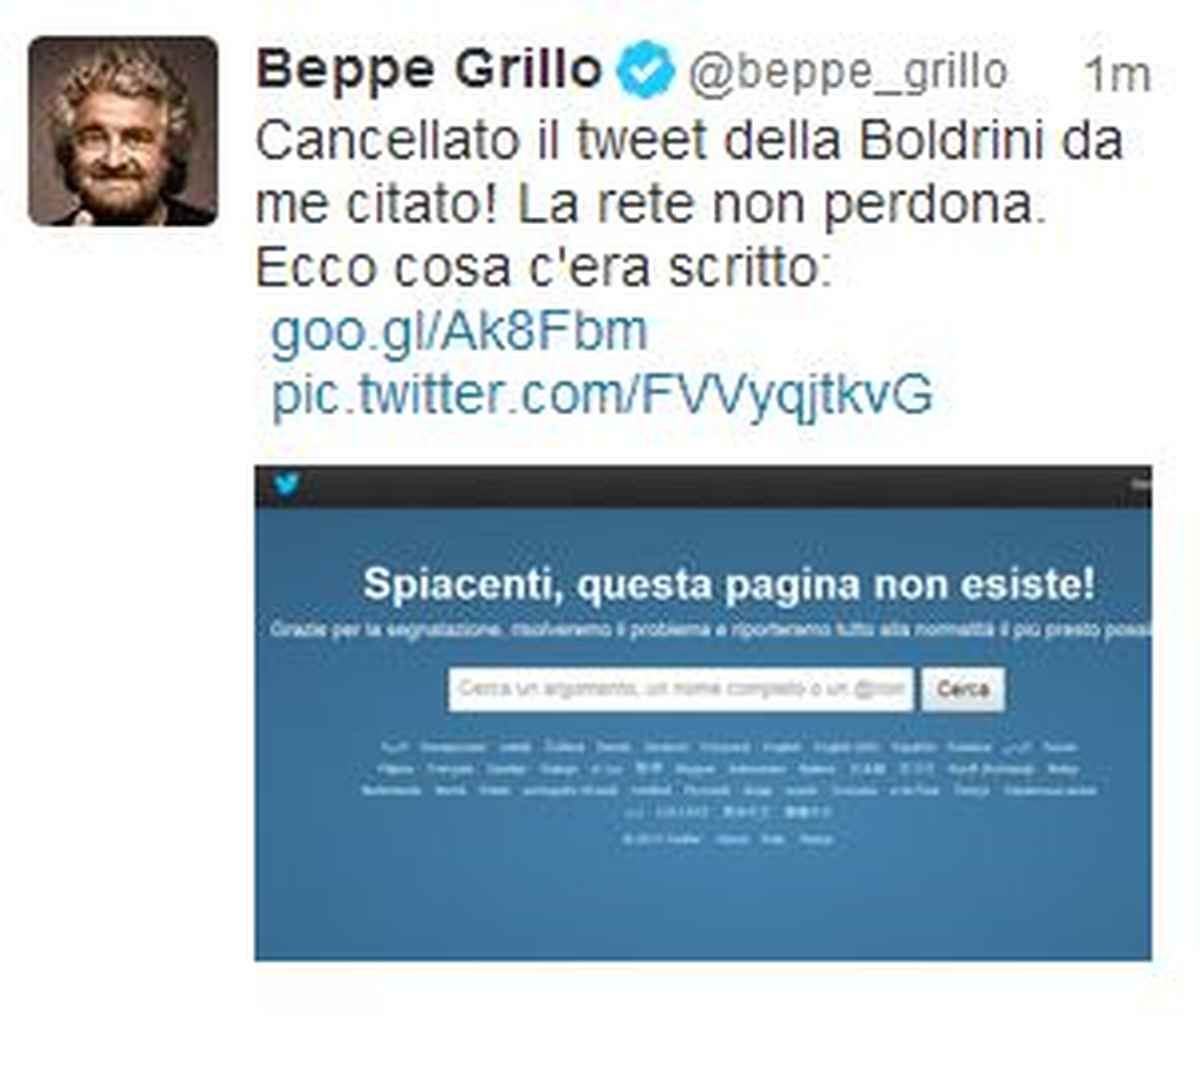 Grillo e la Boldrini si fanno i dispetti su twitter